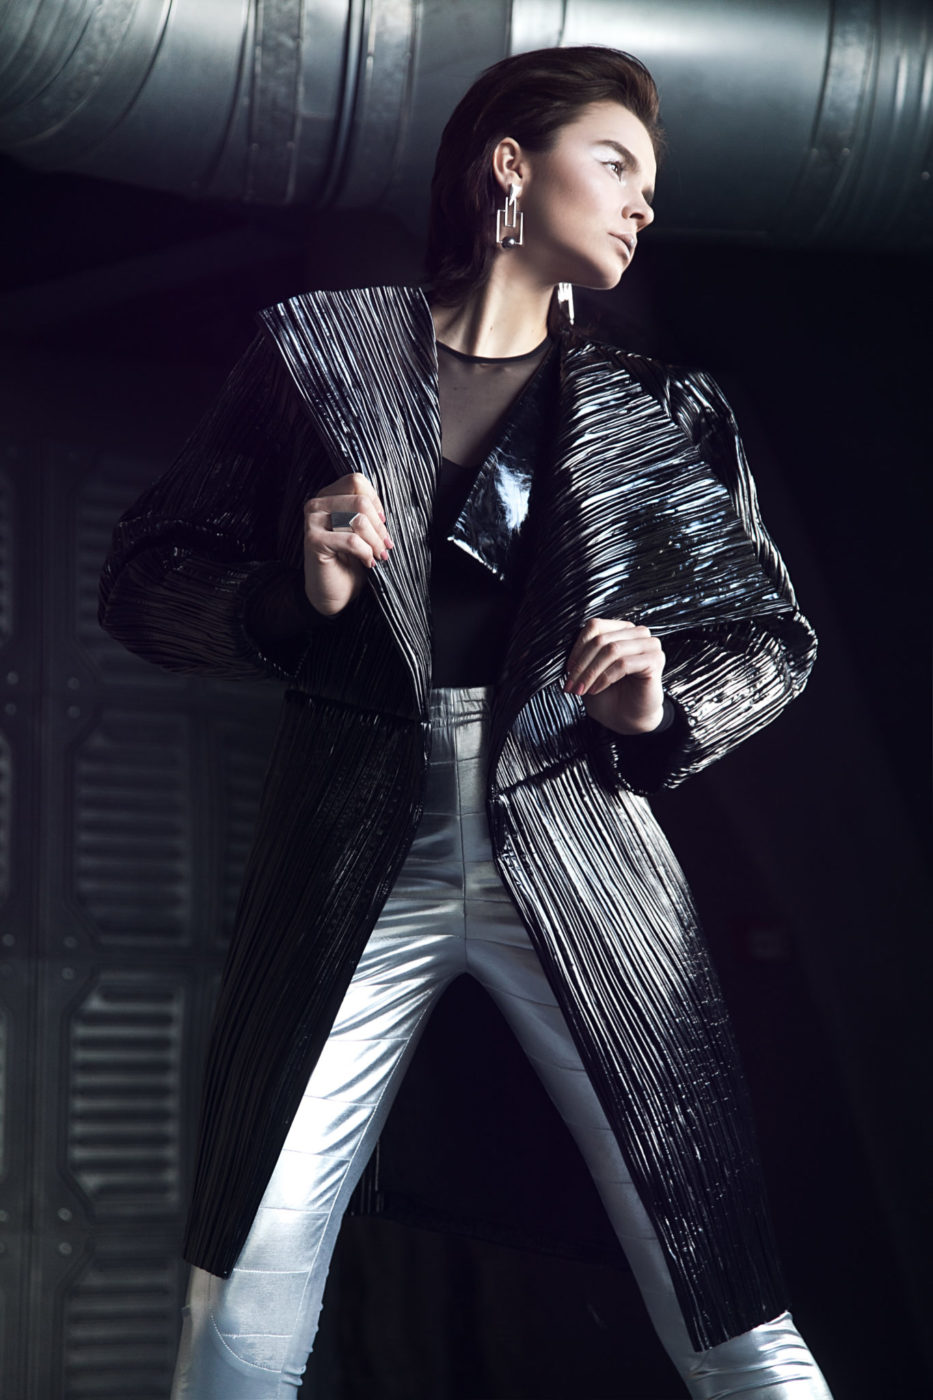 Kobieta stojąca w jasnych spodniach i ciemnym, futurystycznym płaszczu